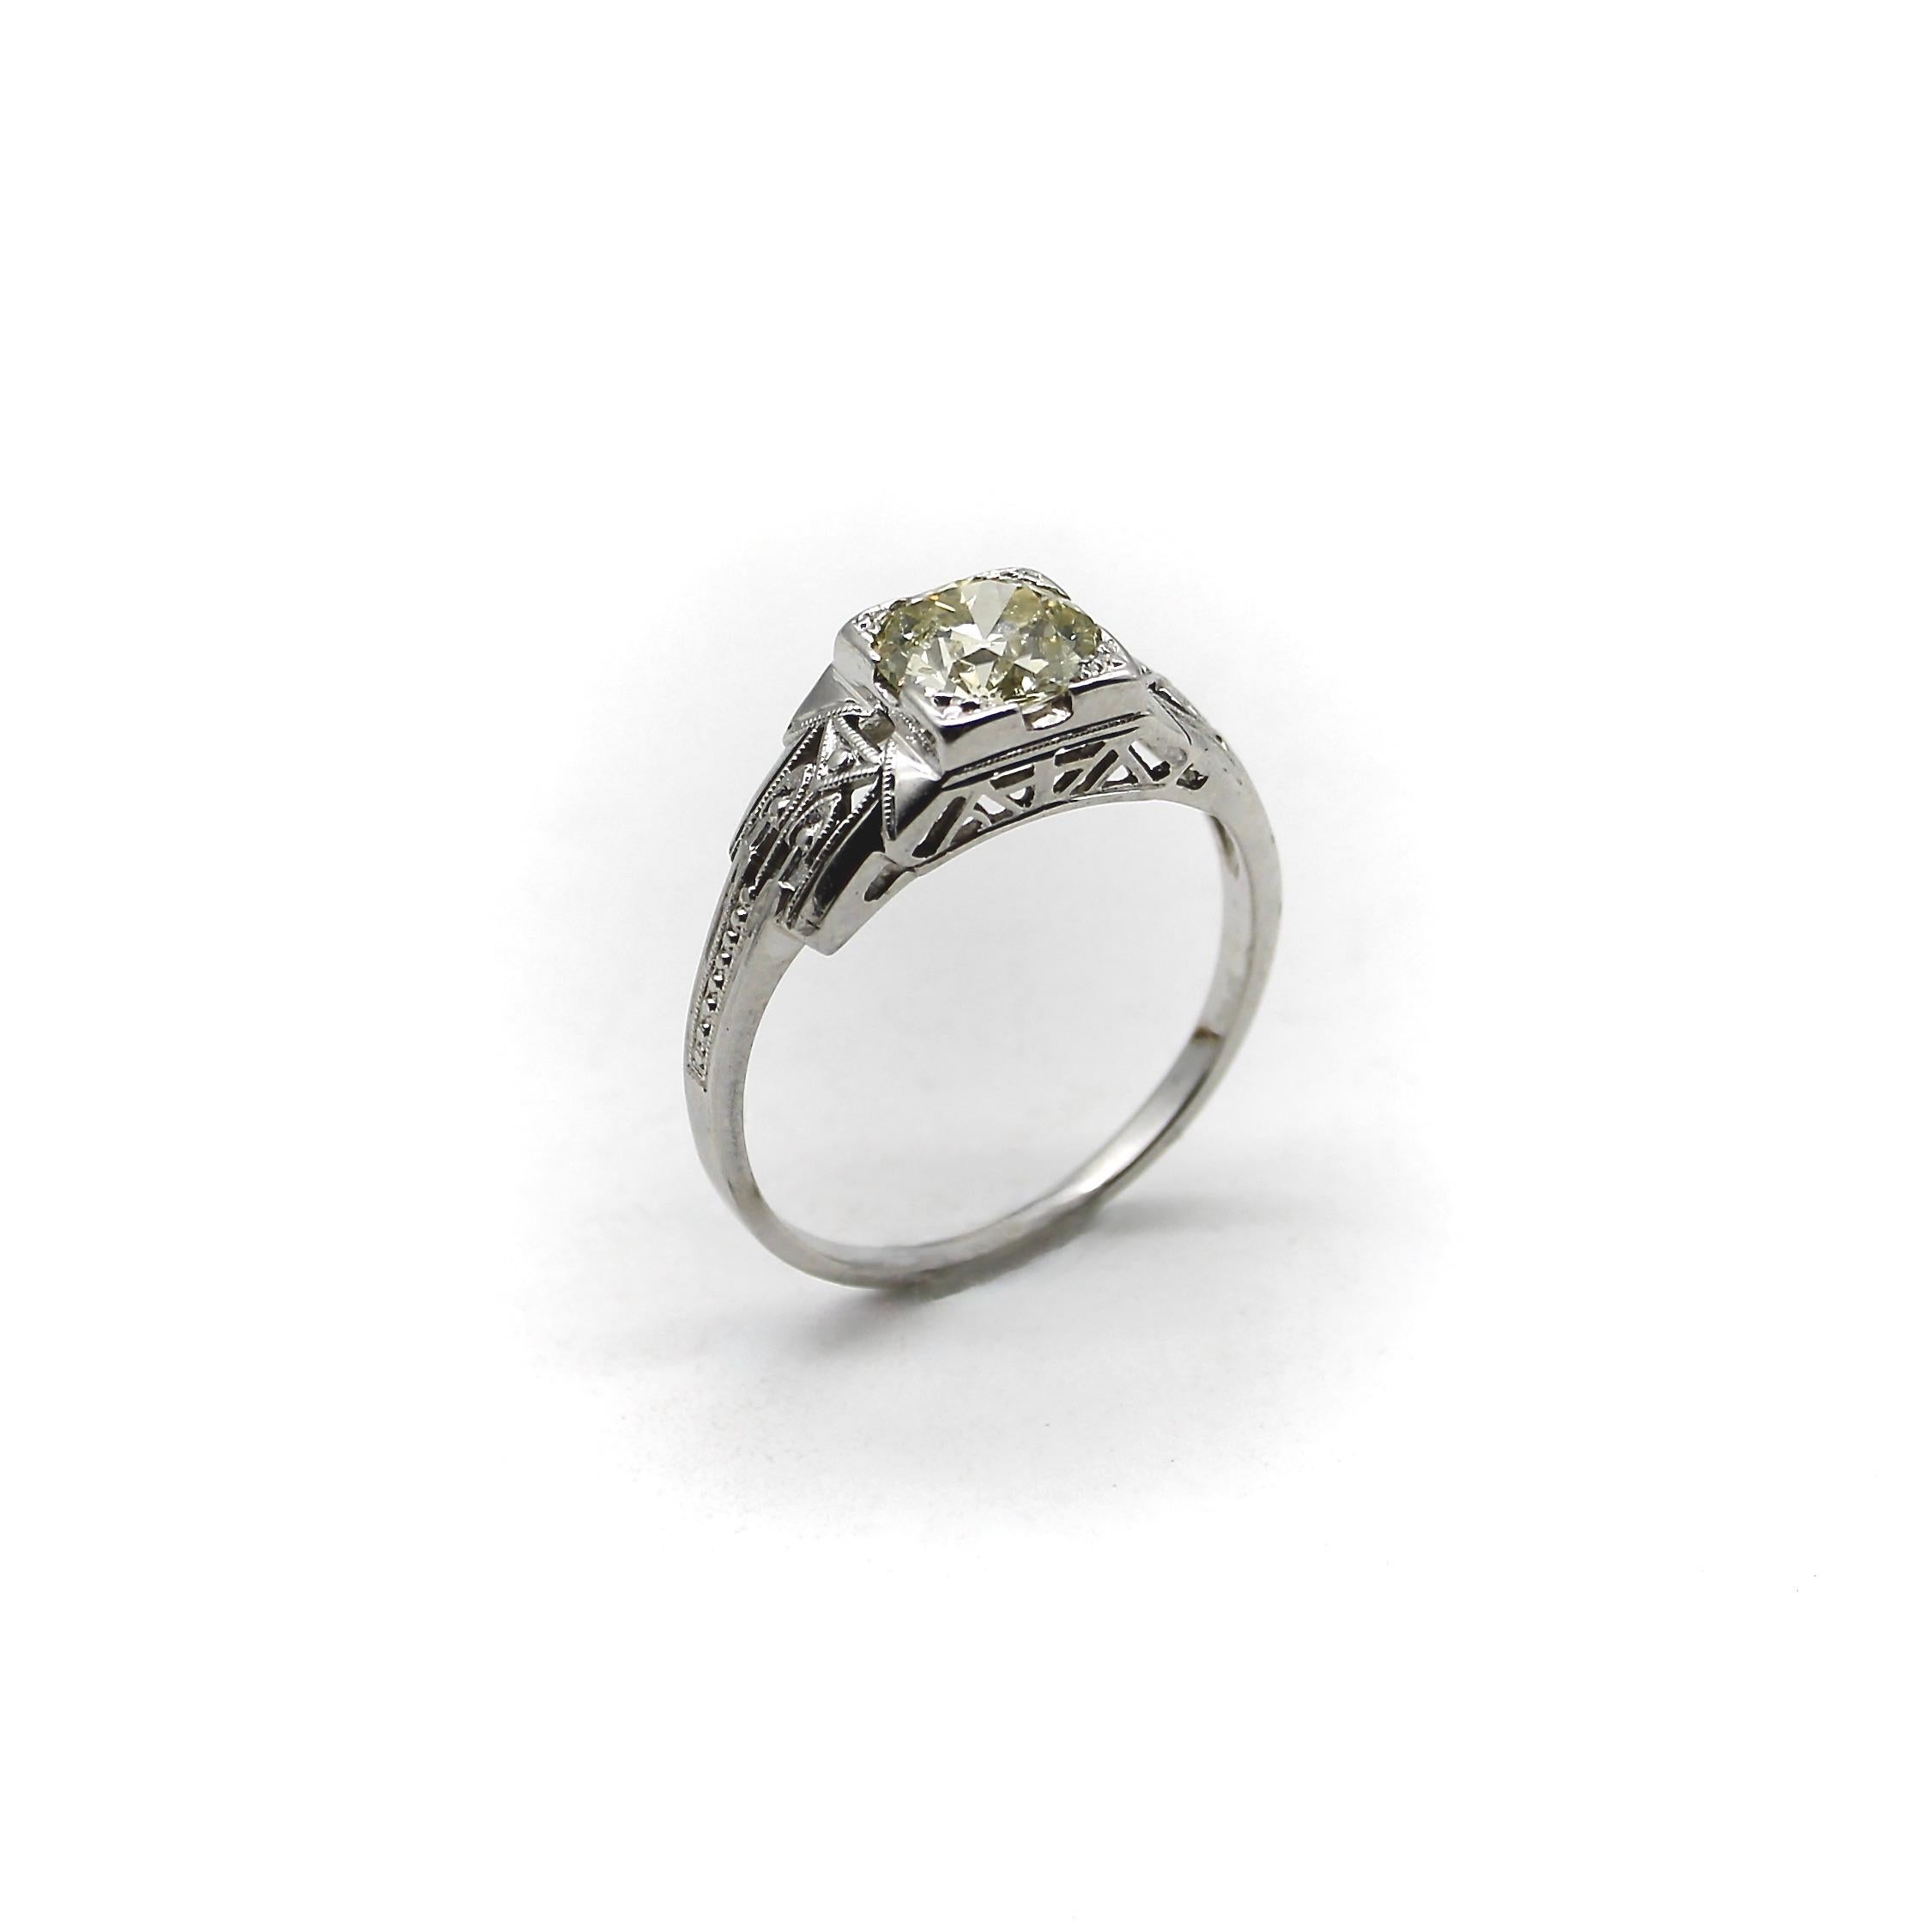 Circa 1920, cette bague de fiançailles à diamants illustre la transition entre le filigrane édouardien et les détails géométriques et architecturaux de l'Art déco, incorporant les deux époques dans son ravissant design. Le diamant de taille